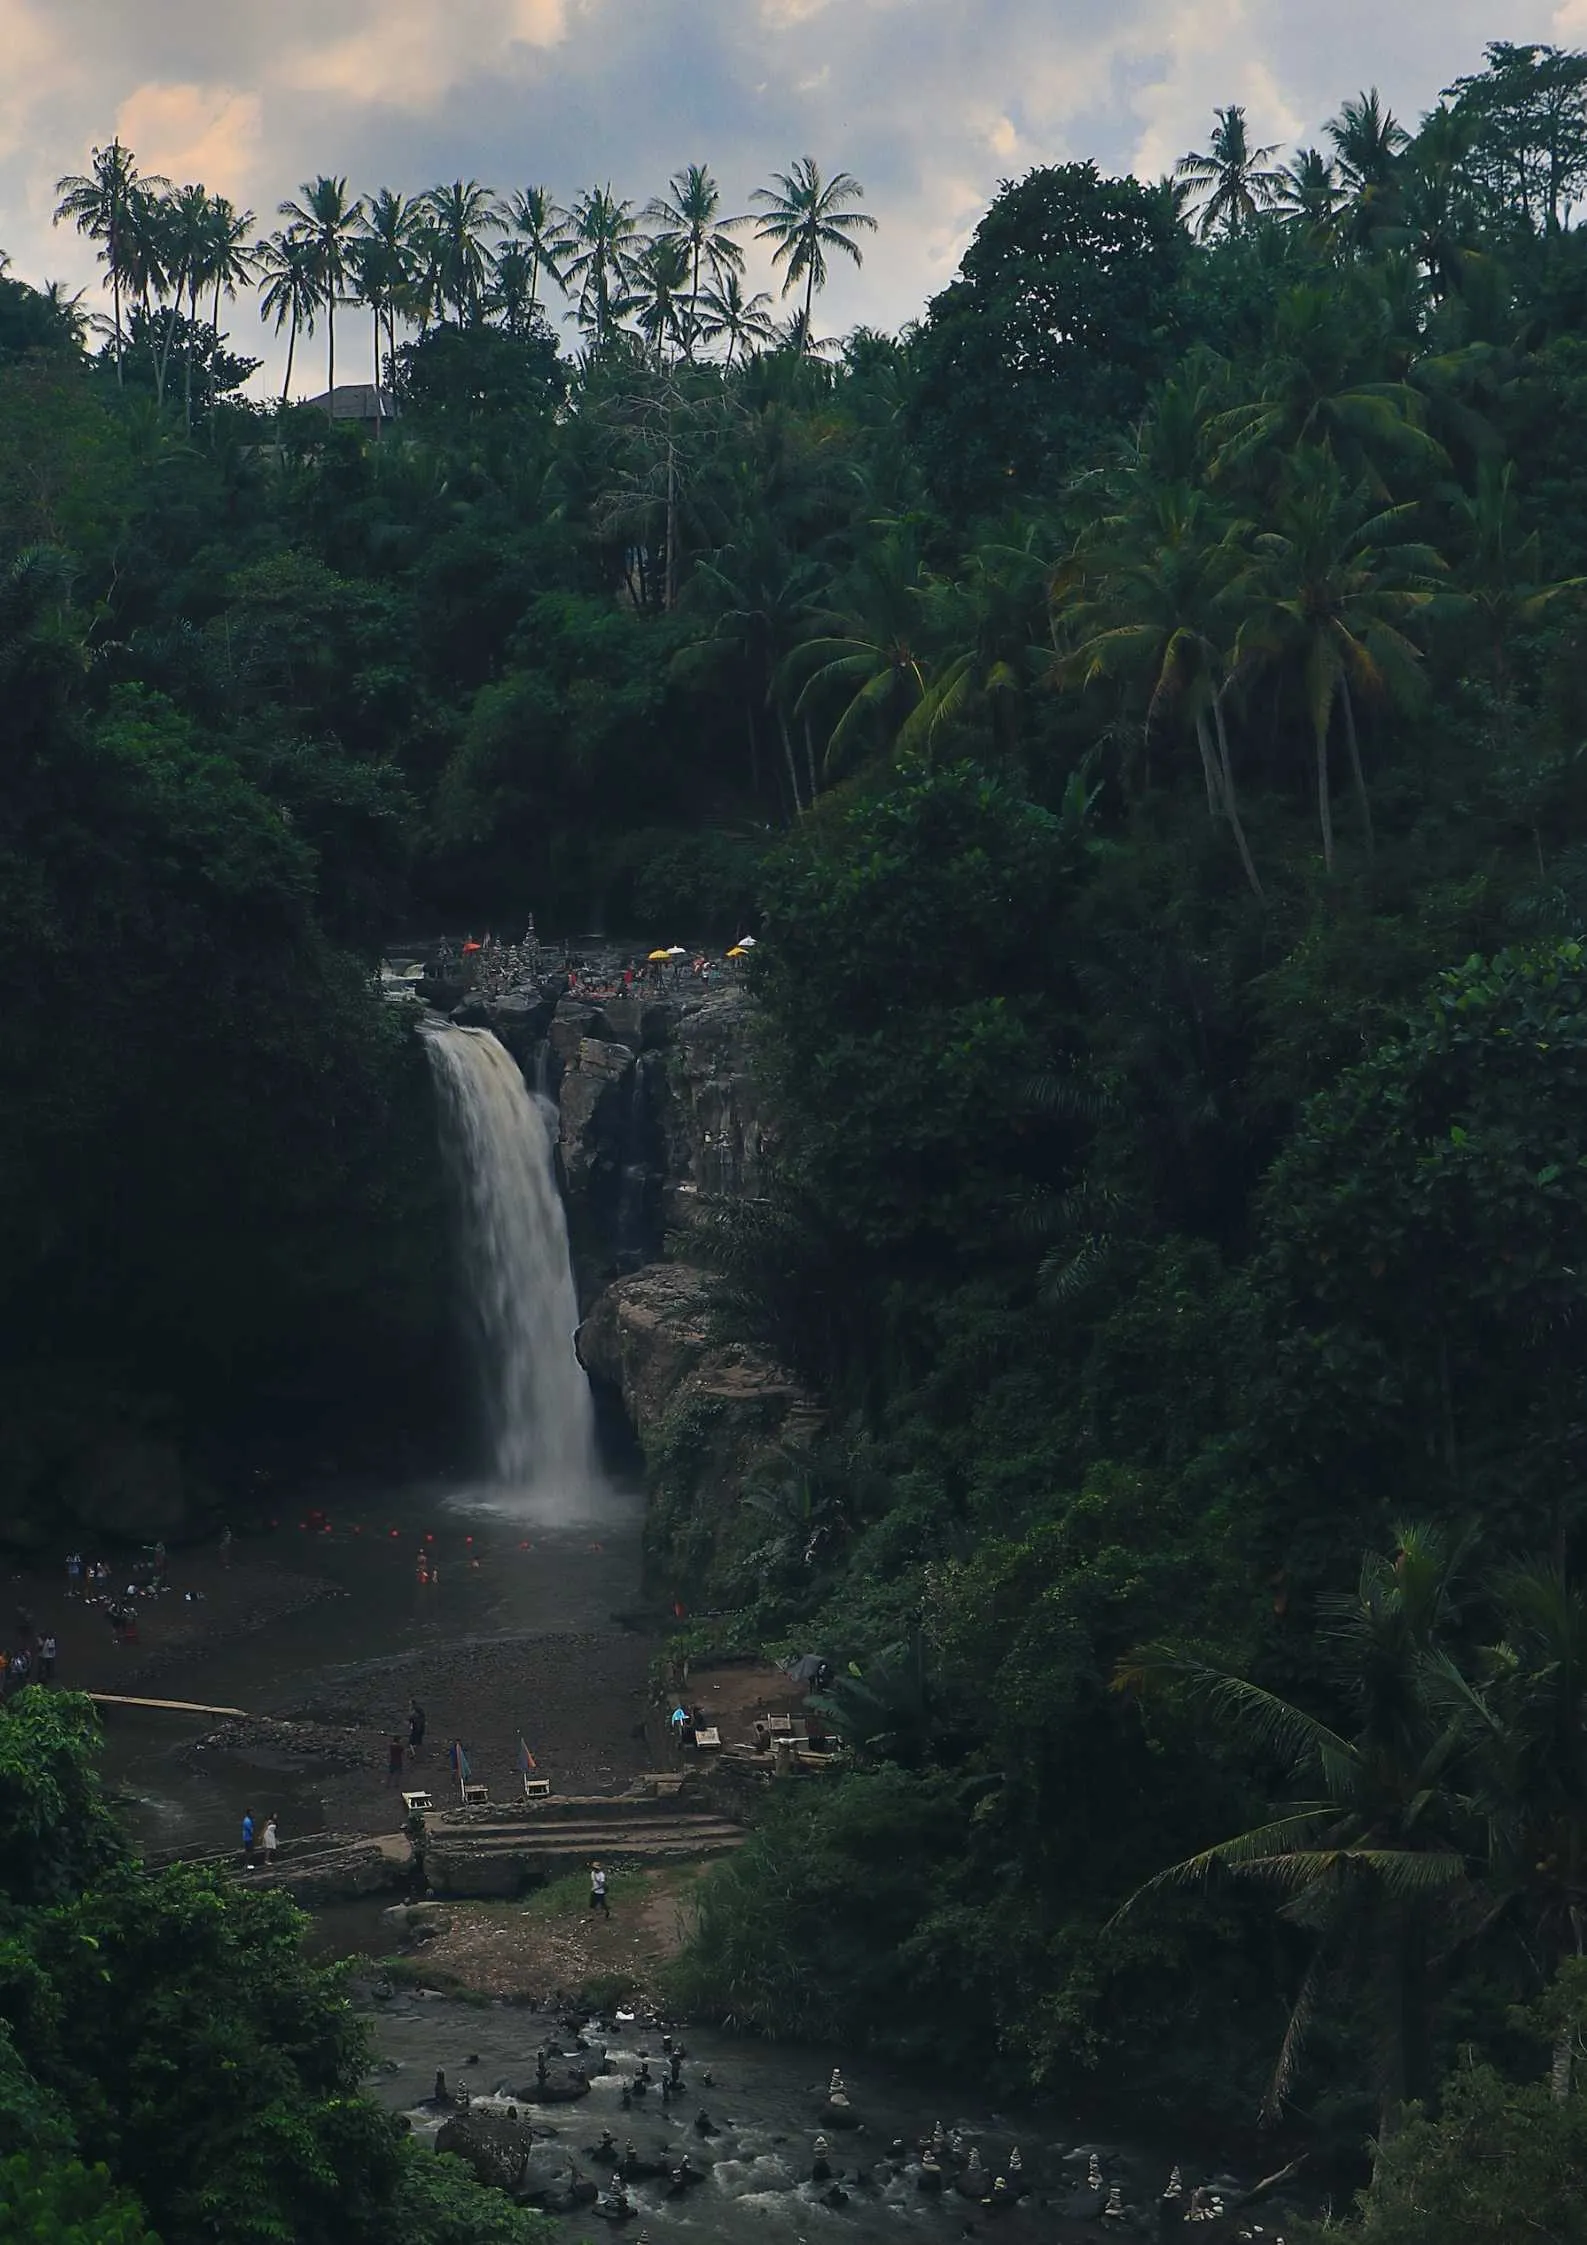 Tegenungan Waterfall, Bali, Indonesia